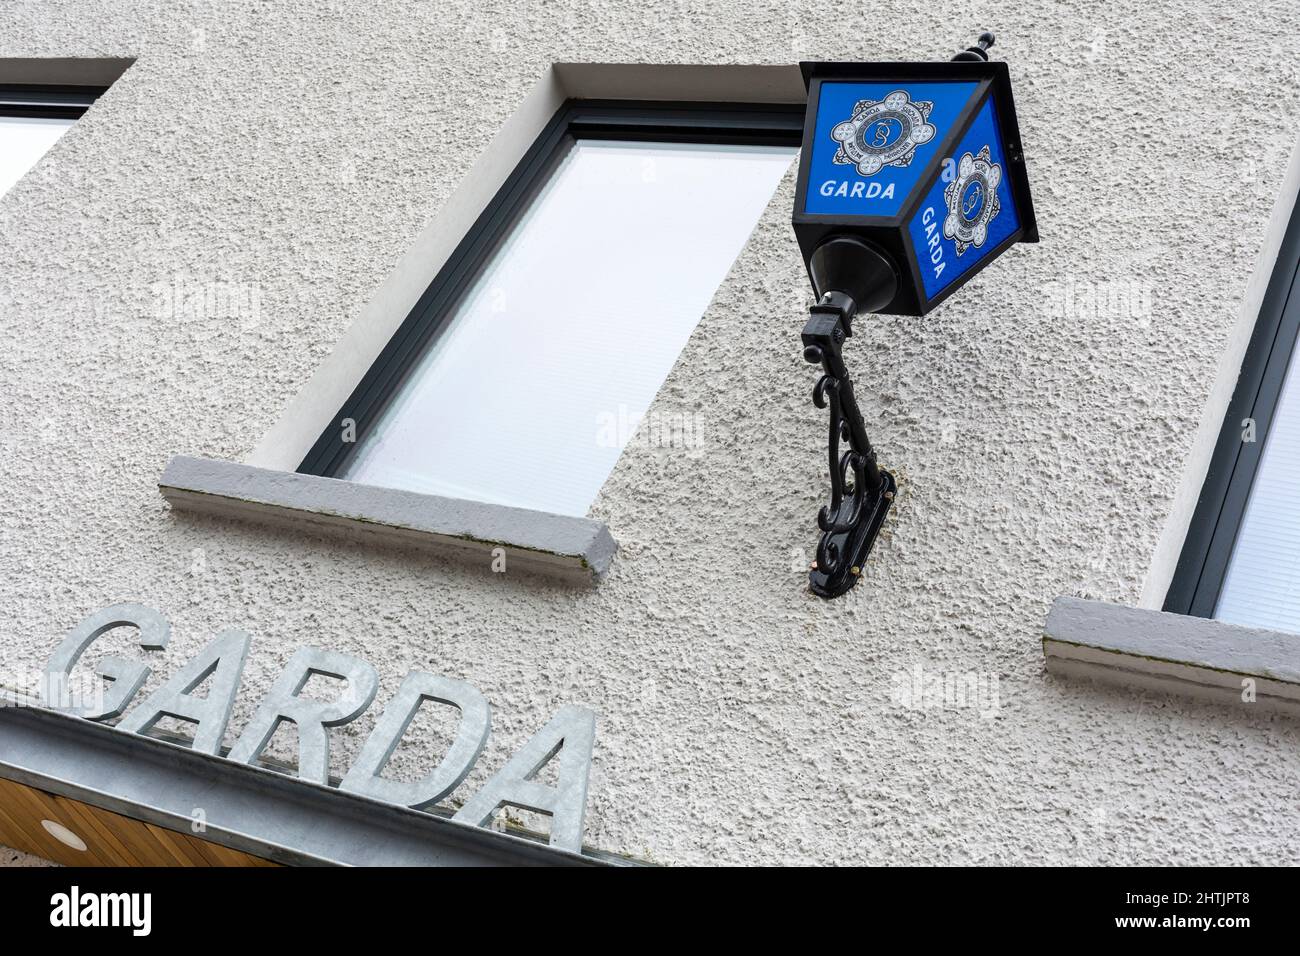 Una estación de Garda Síochána, oficina de la policía irlandesa, recientemente modernizada y ampliada, ciudad de Donegal, condado de Donegal, Irlanda Foto de stock